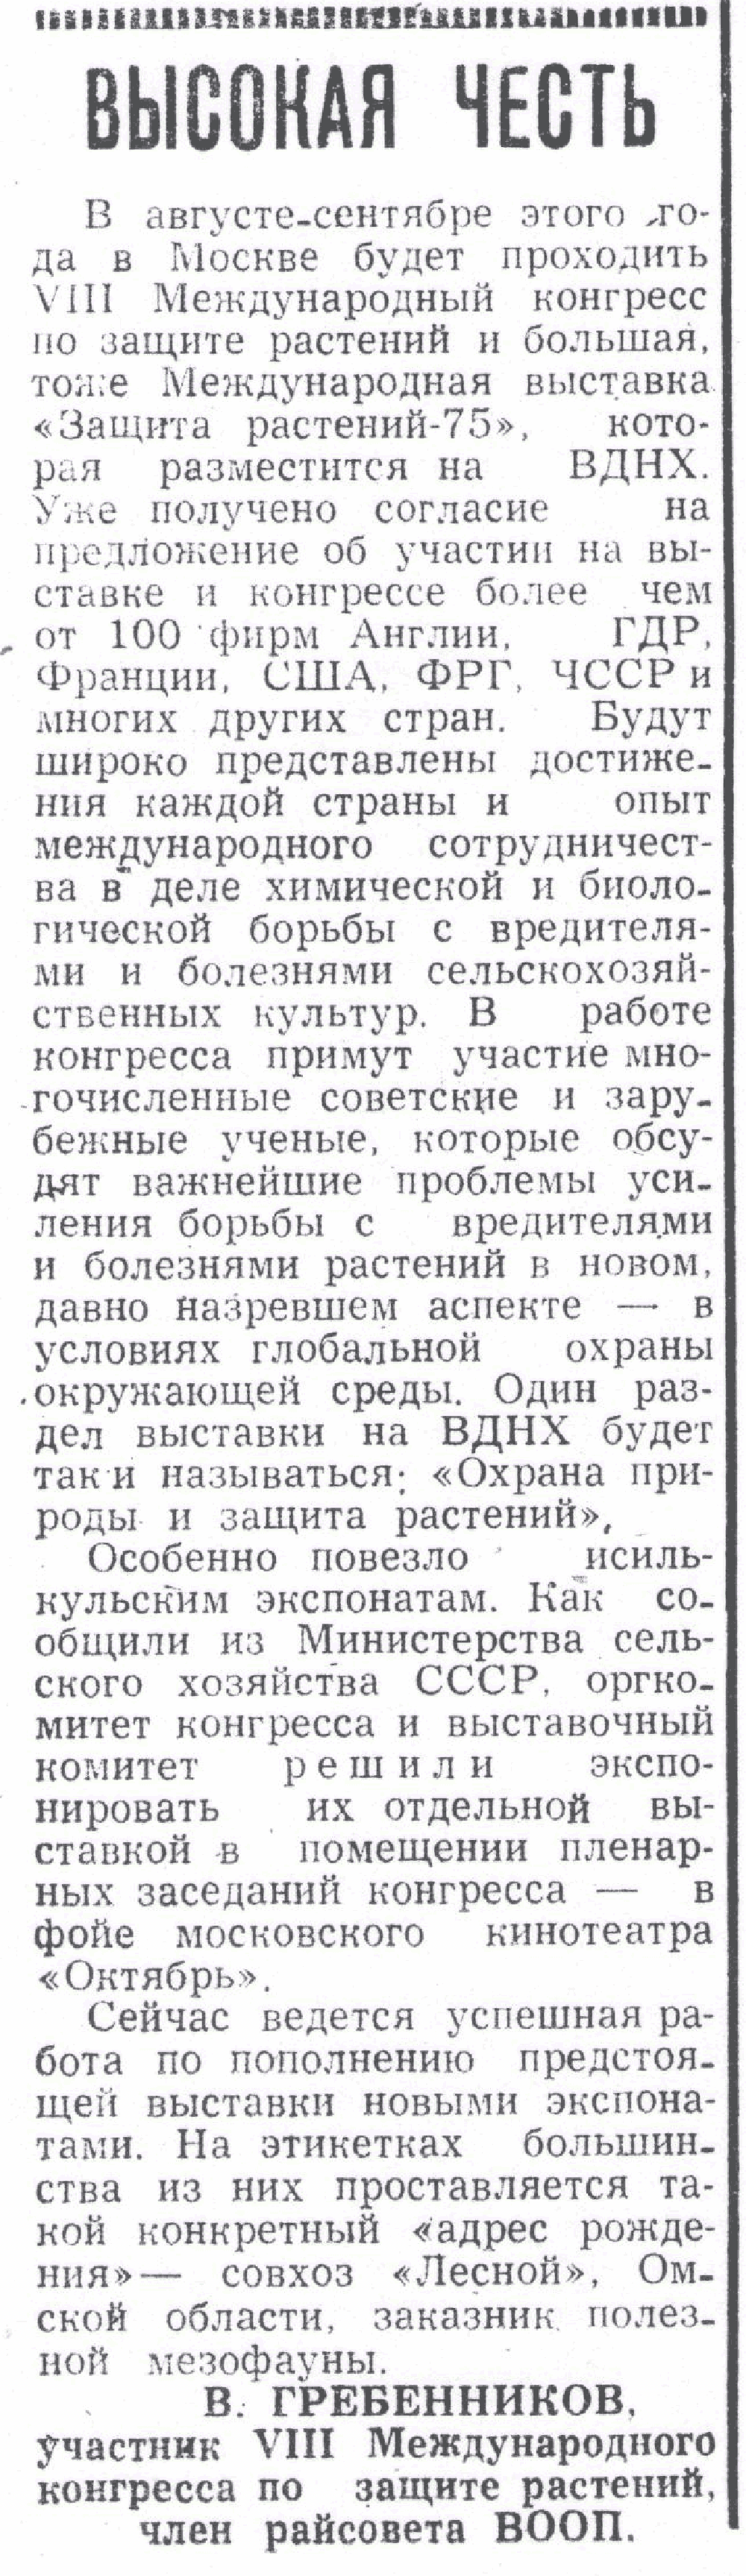 Высокая честь. В.С. Гребенников. Знамя (Исилькульский р-н, Омской обл.), 29.05.1975.